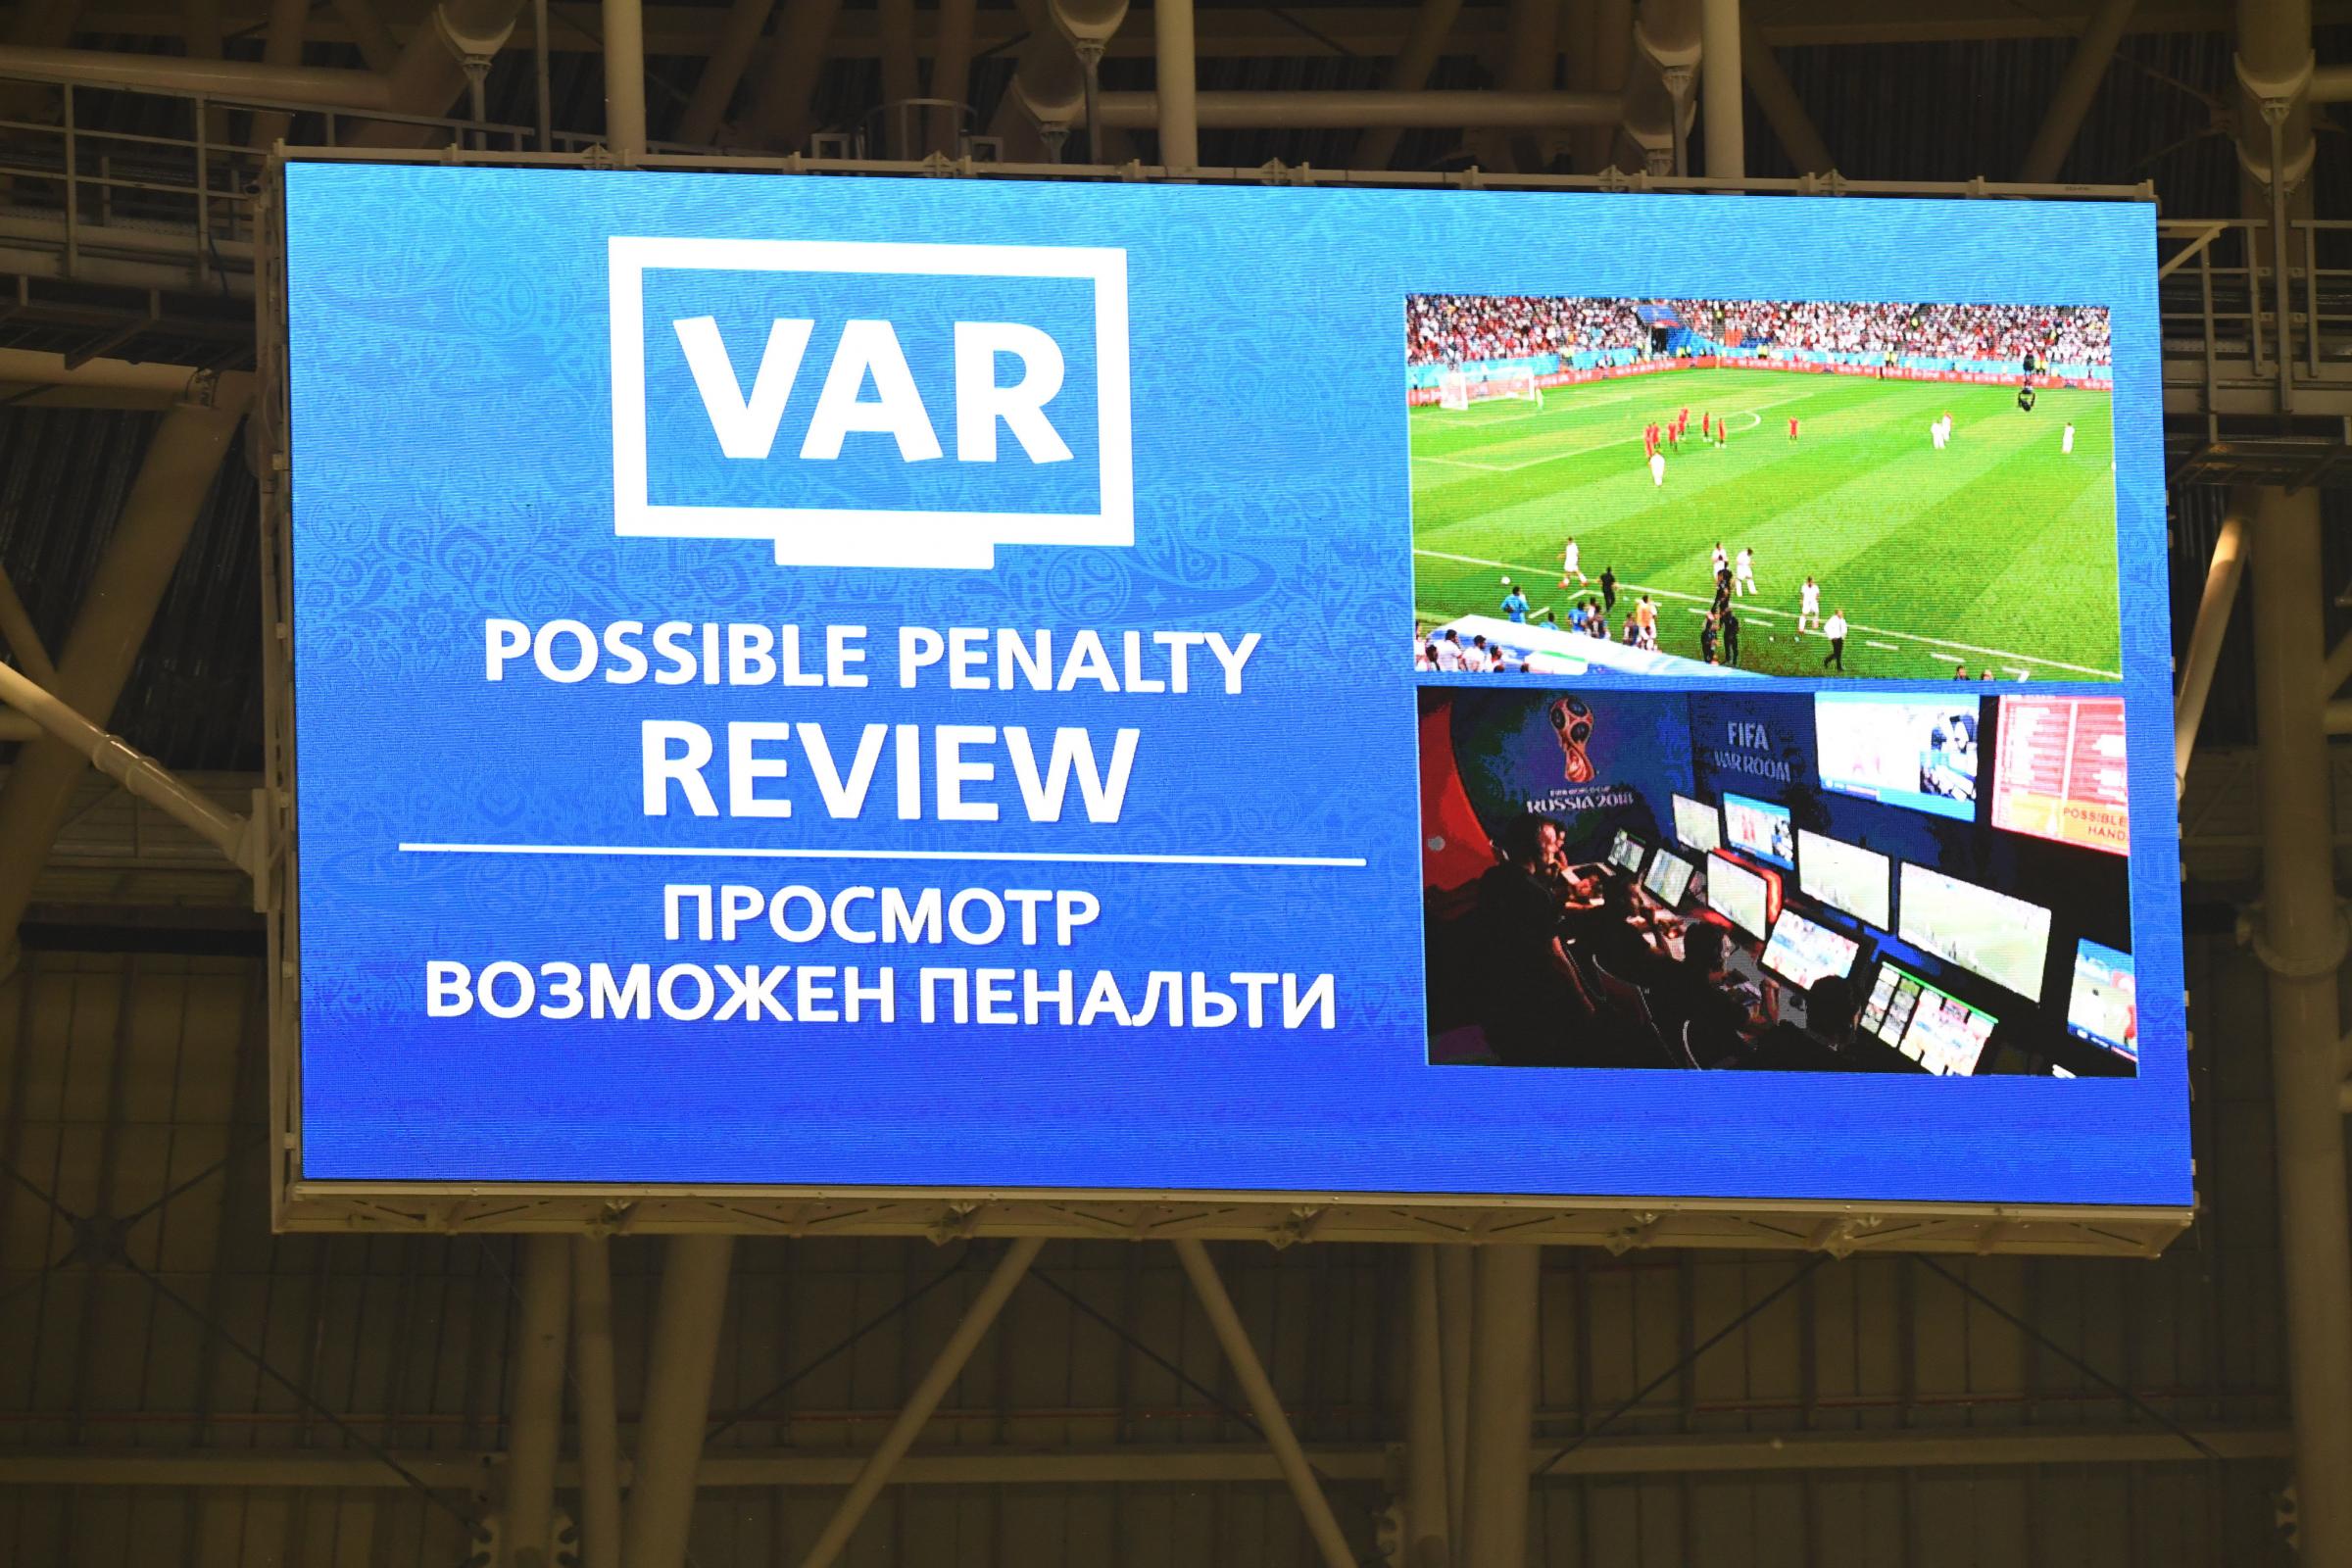 Opinion: VAR for Soccer